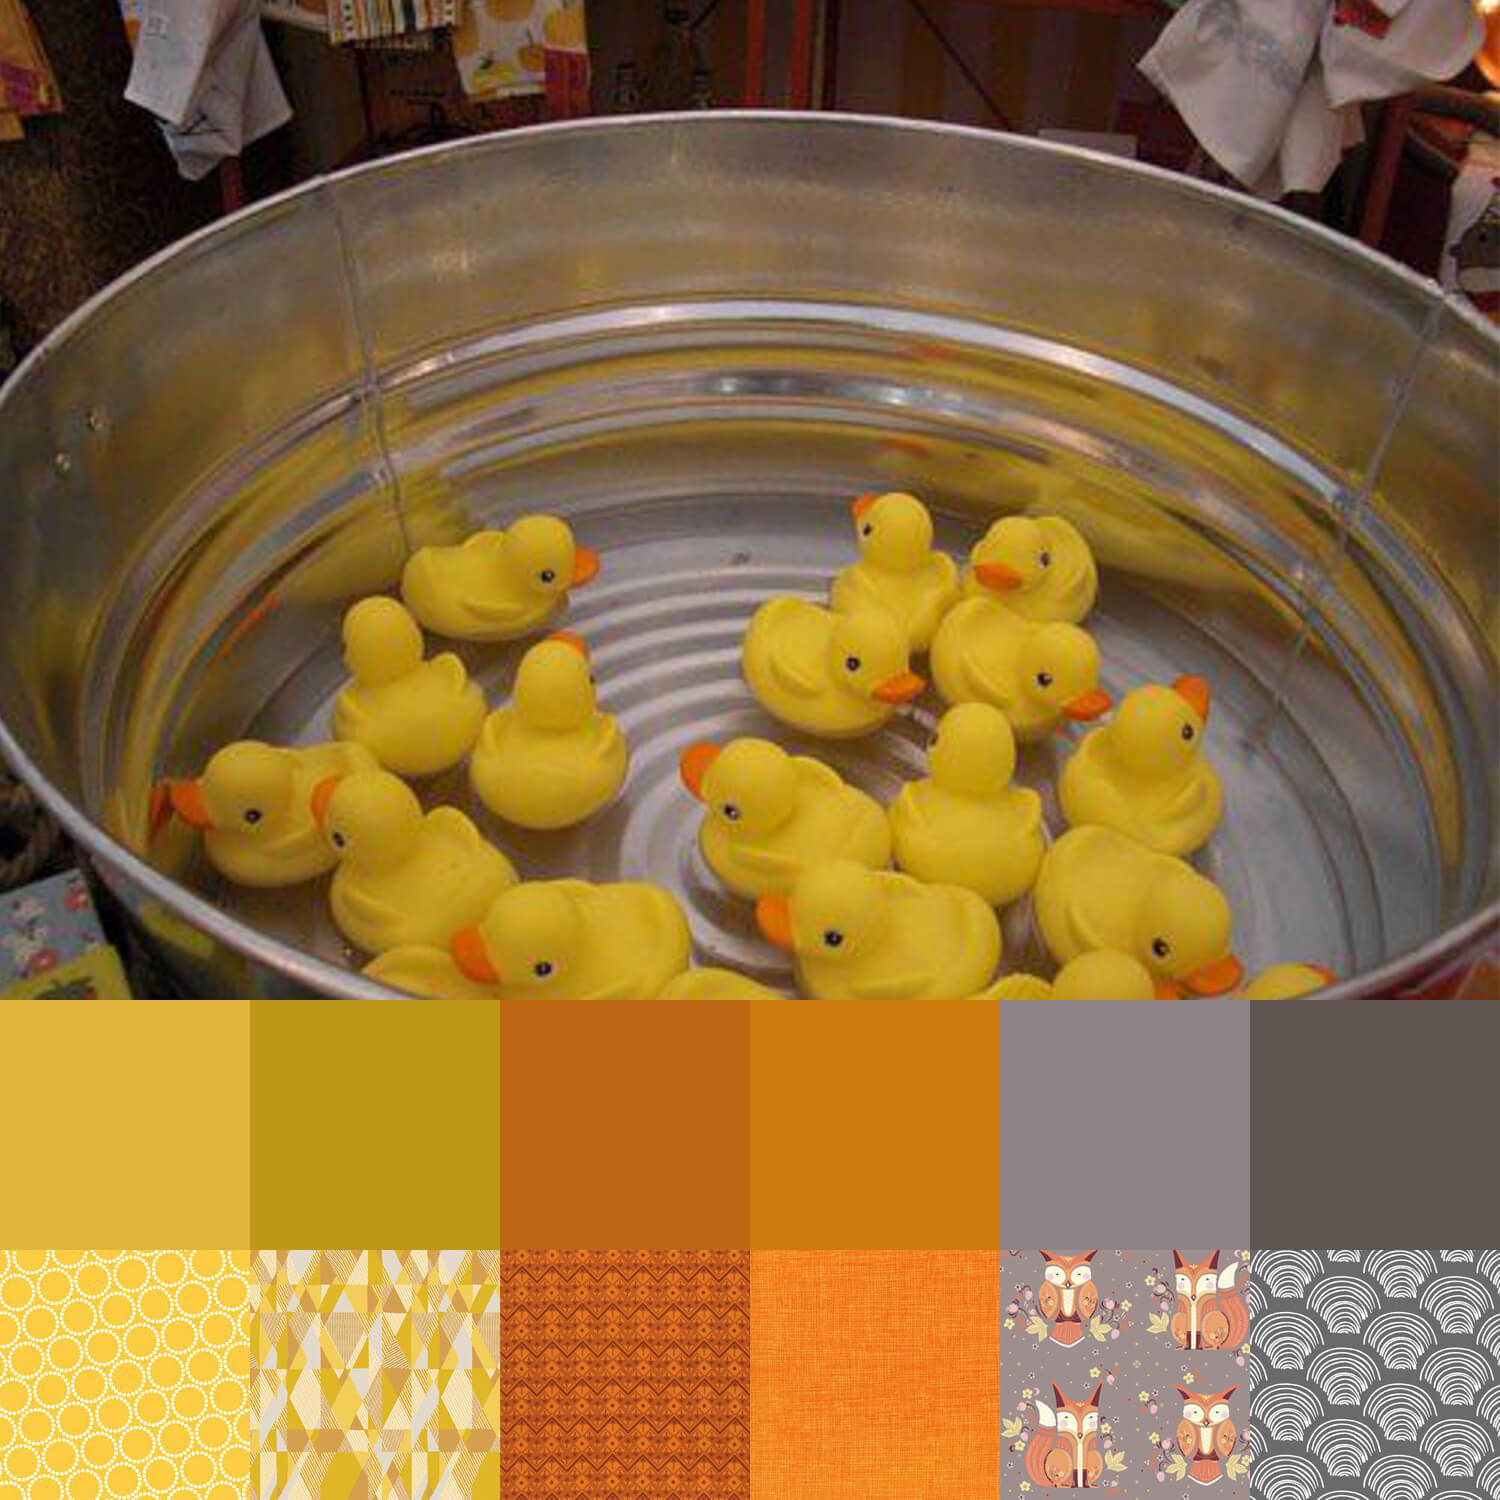 Rubber Duckies Palette and Bundle.jpg